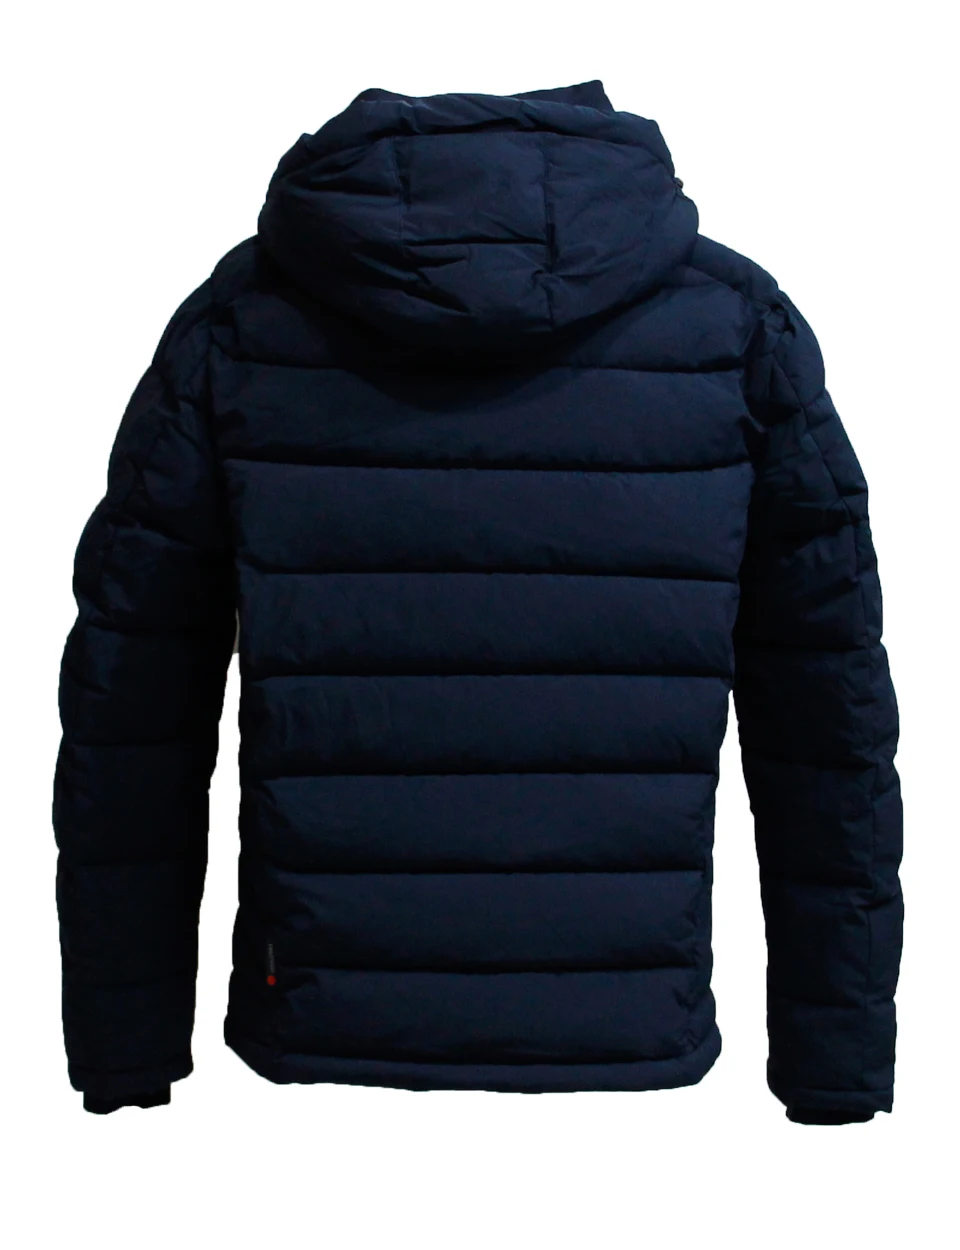 TALIFECK, Новое поступление, мужская зимняя куртка, теплая ветровка, мягкое пальто, зимнее пальто, мужское повседневное пальто с манжетами, европейский размер плюс